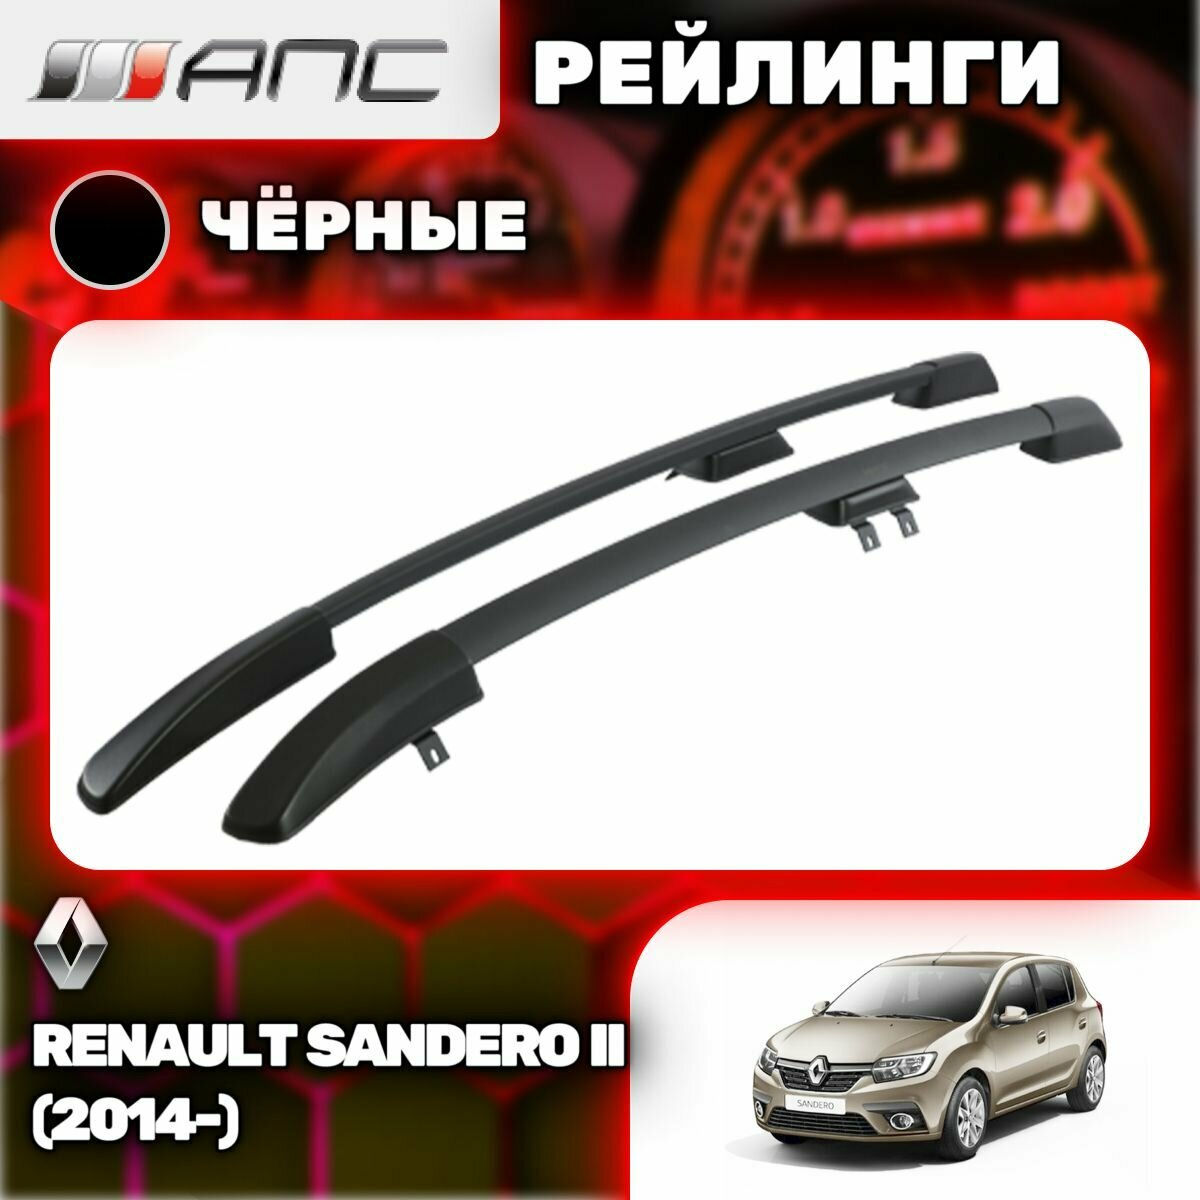 Рейлинги АПС для Renault Sandero II (2014-) (Рено Сандеро) черные 0226-БП-02